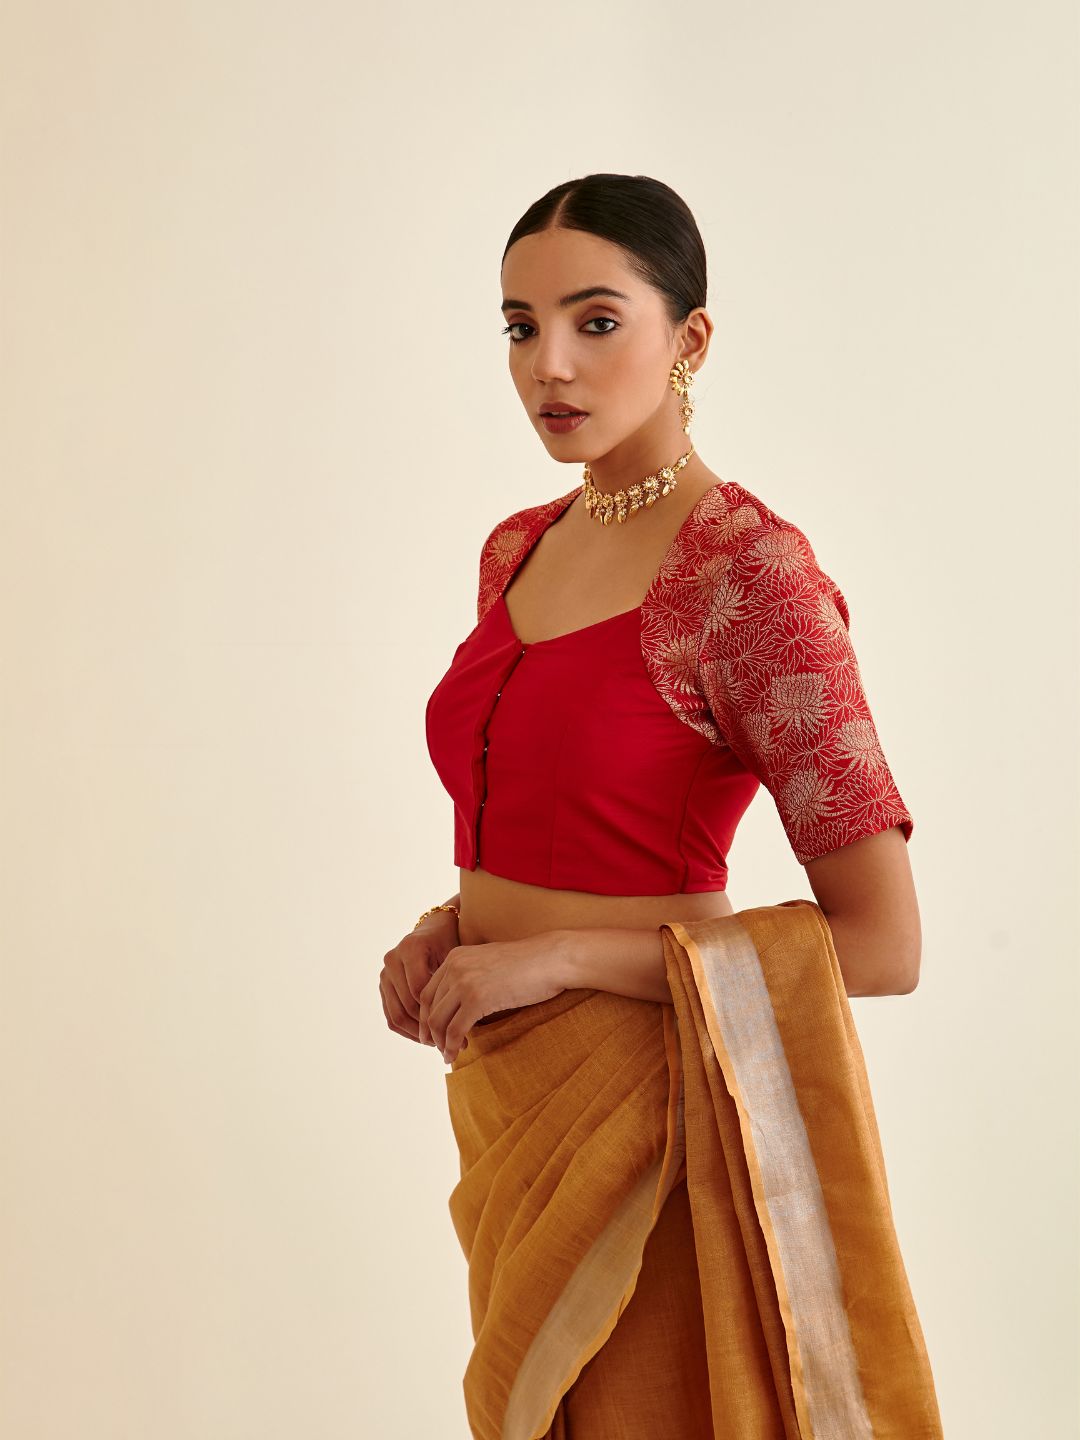 Banarasi zari bouse in Queen Anne neckline-scarlet red